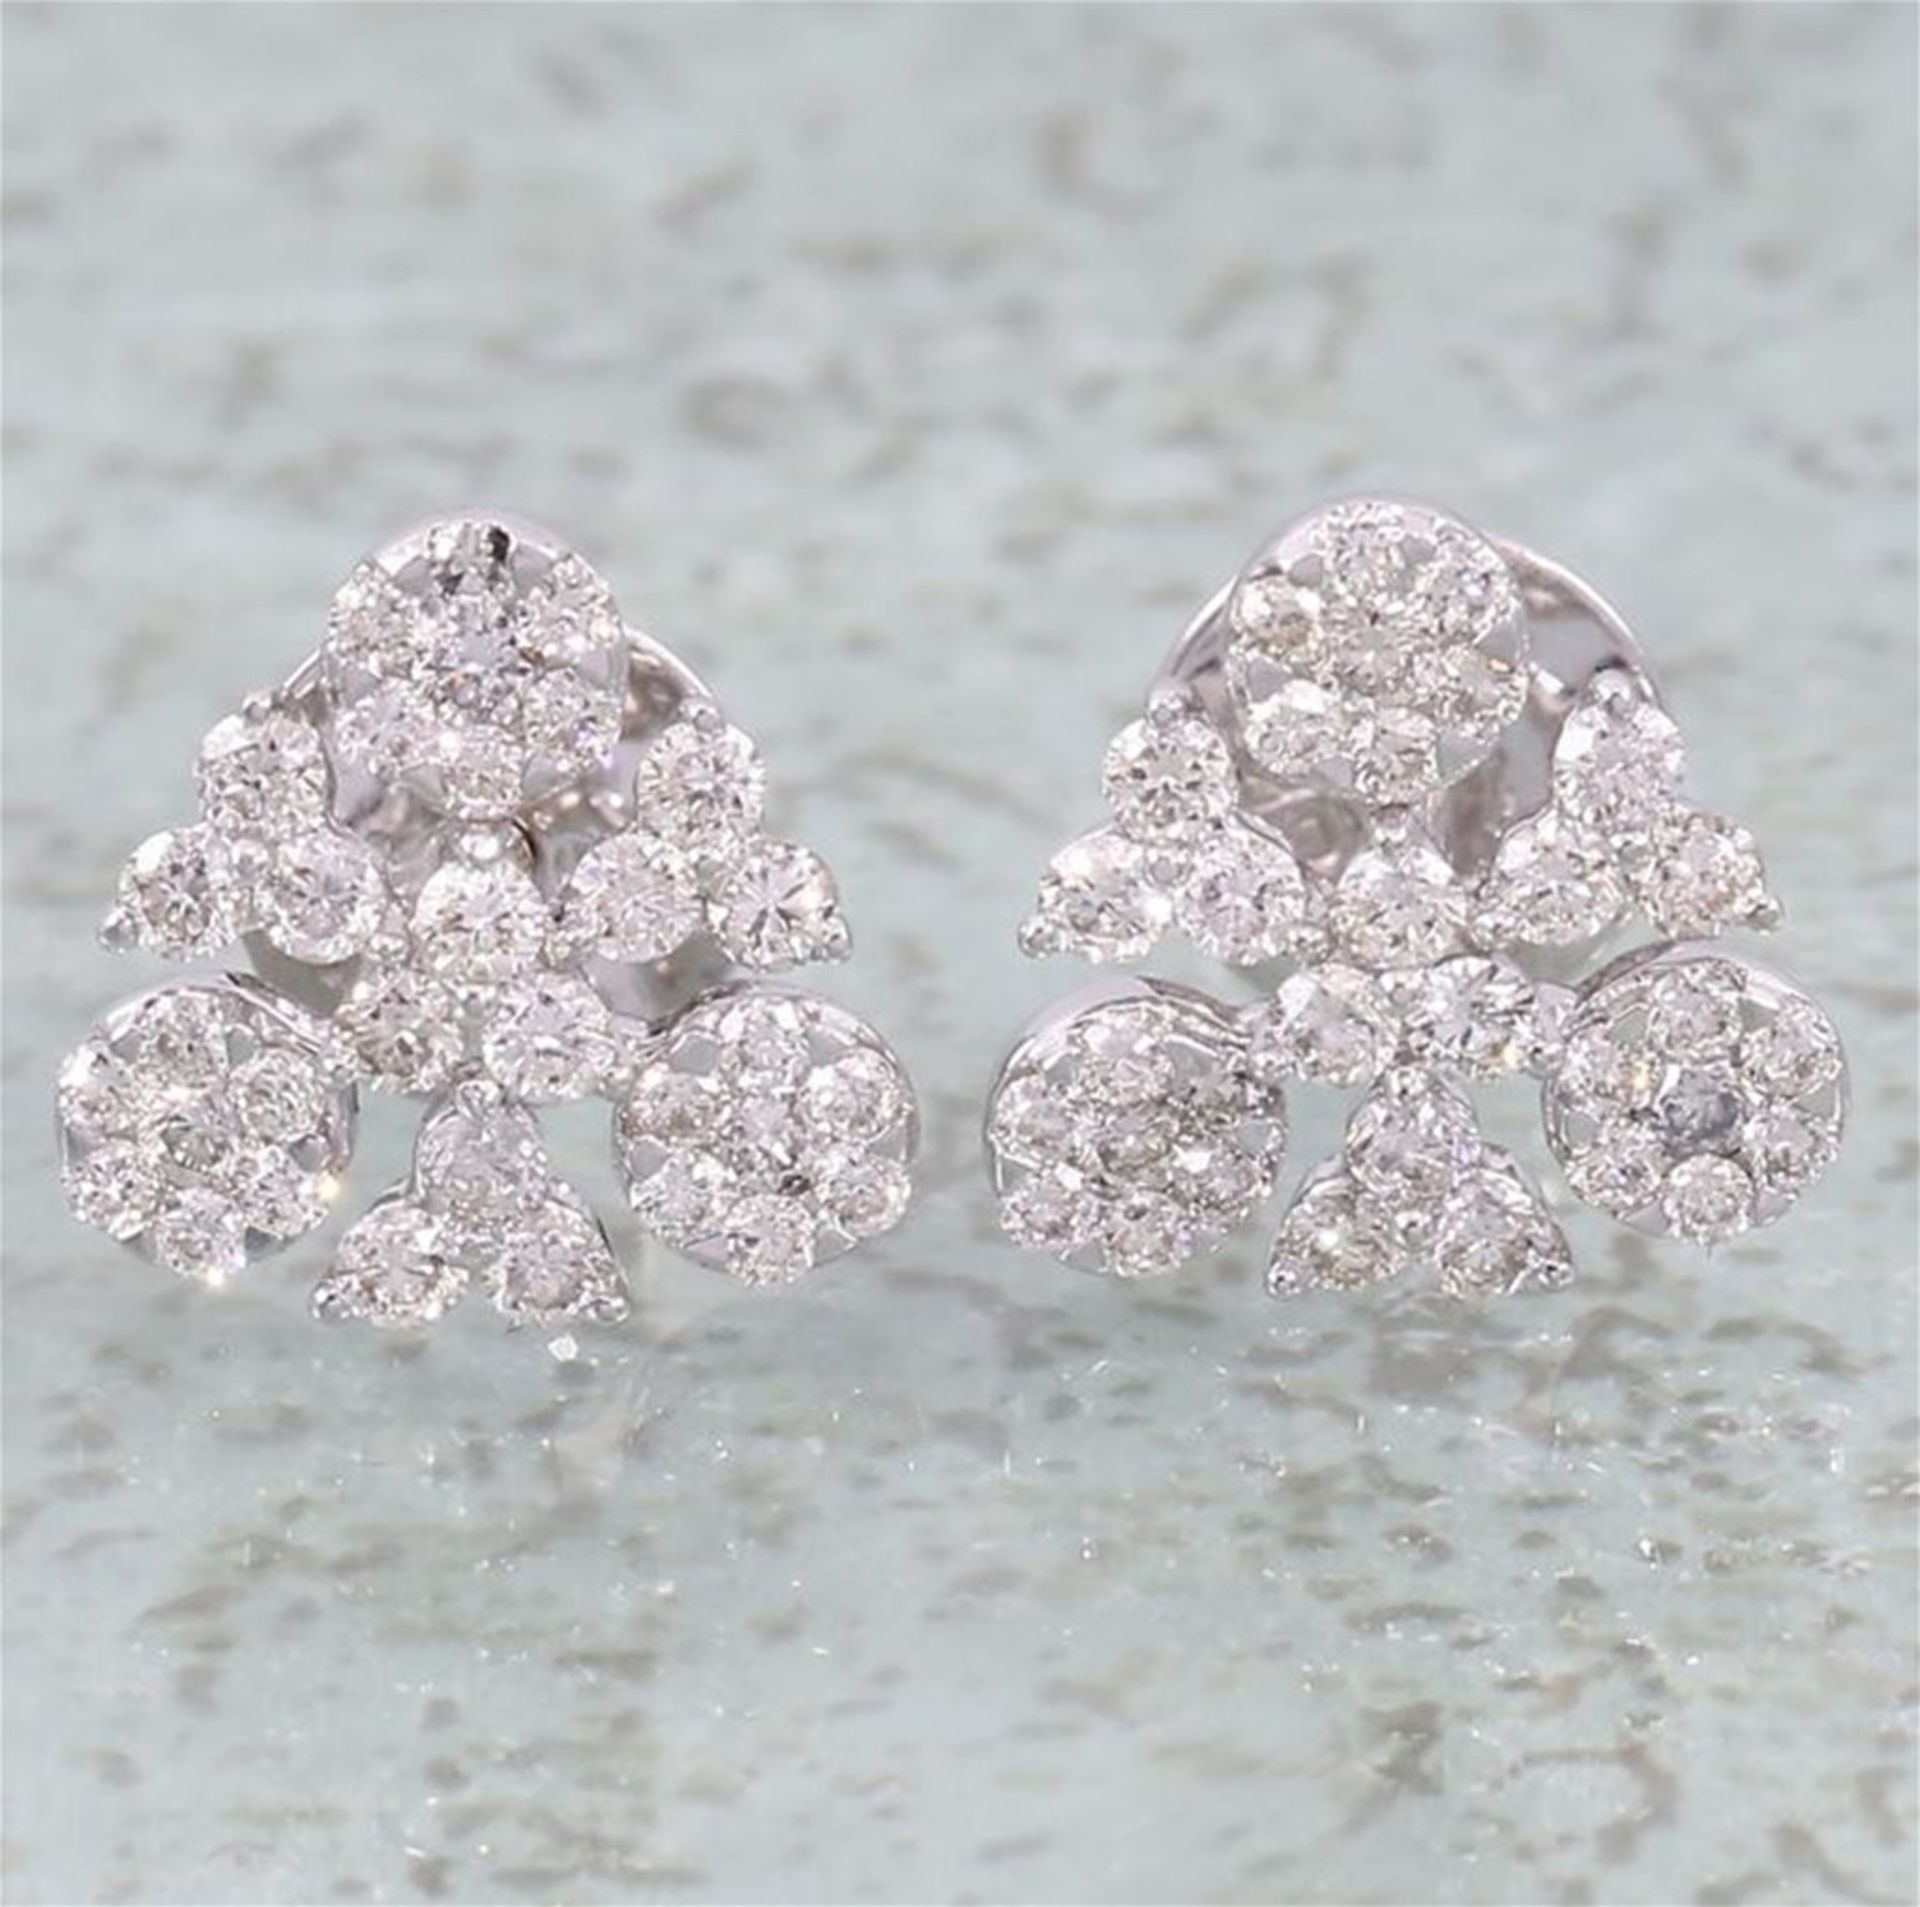 IGI Certified 18 K / 750 White Gold Diamond Earrings - Image 2 of 7